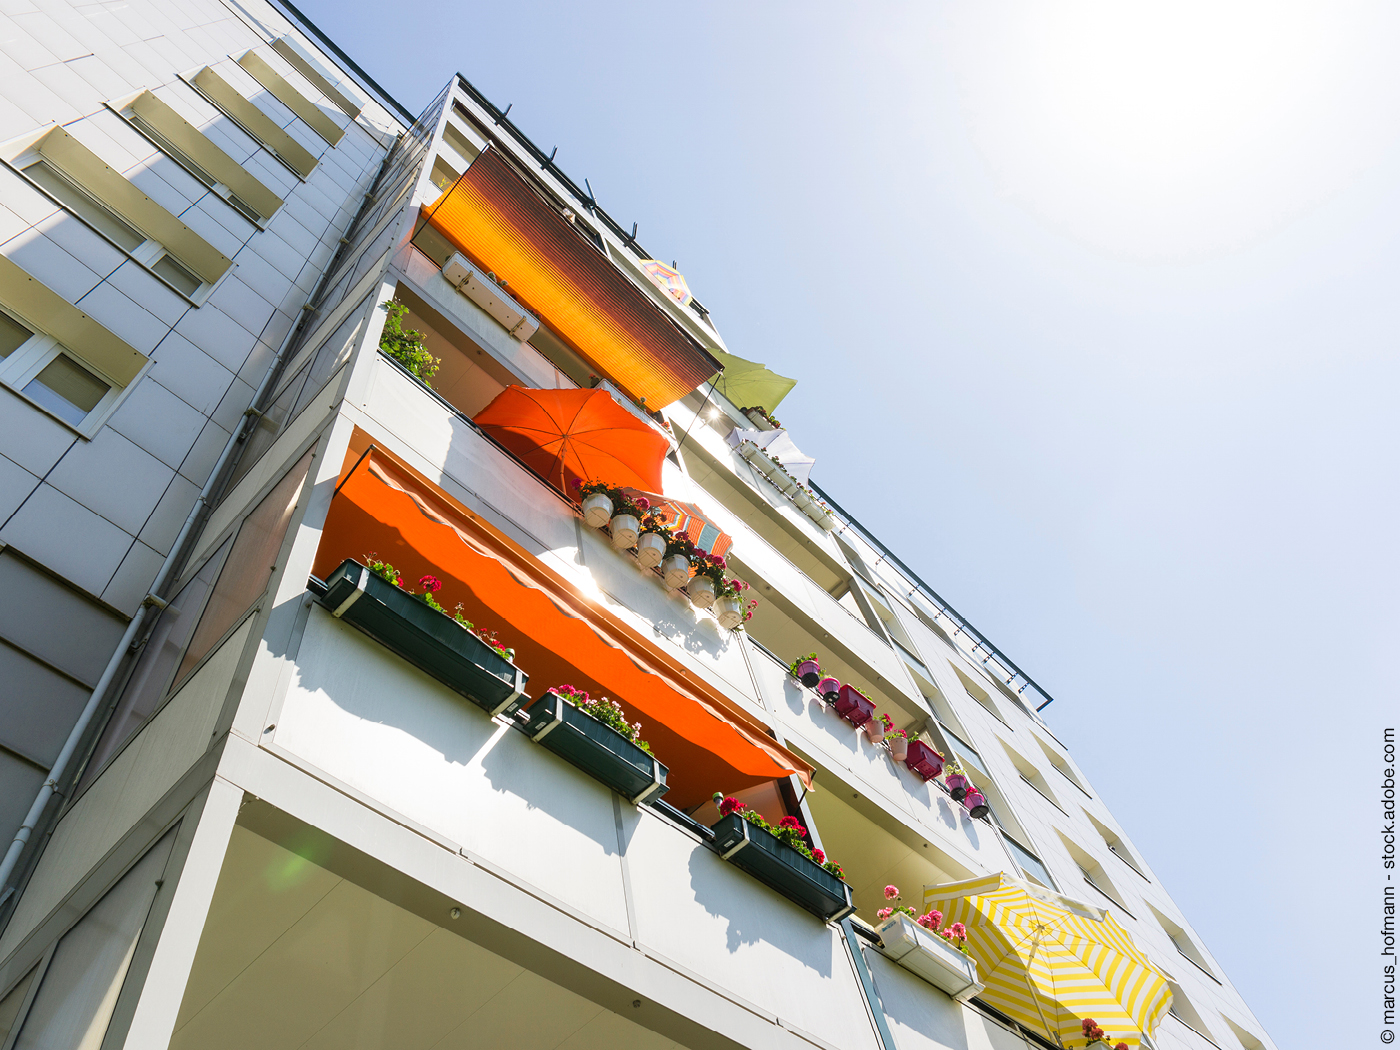 Hochhausfassade mit Sonnenschirmen und Blumen auf den Balkons